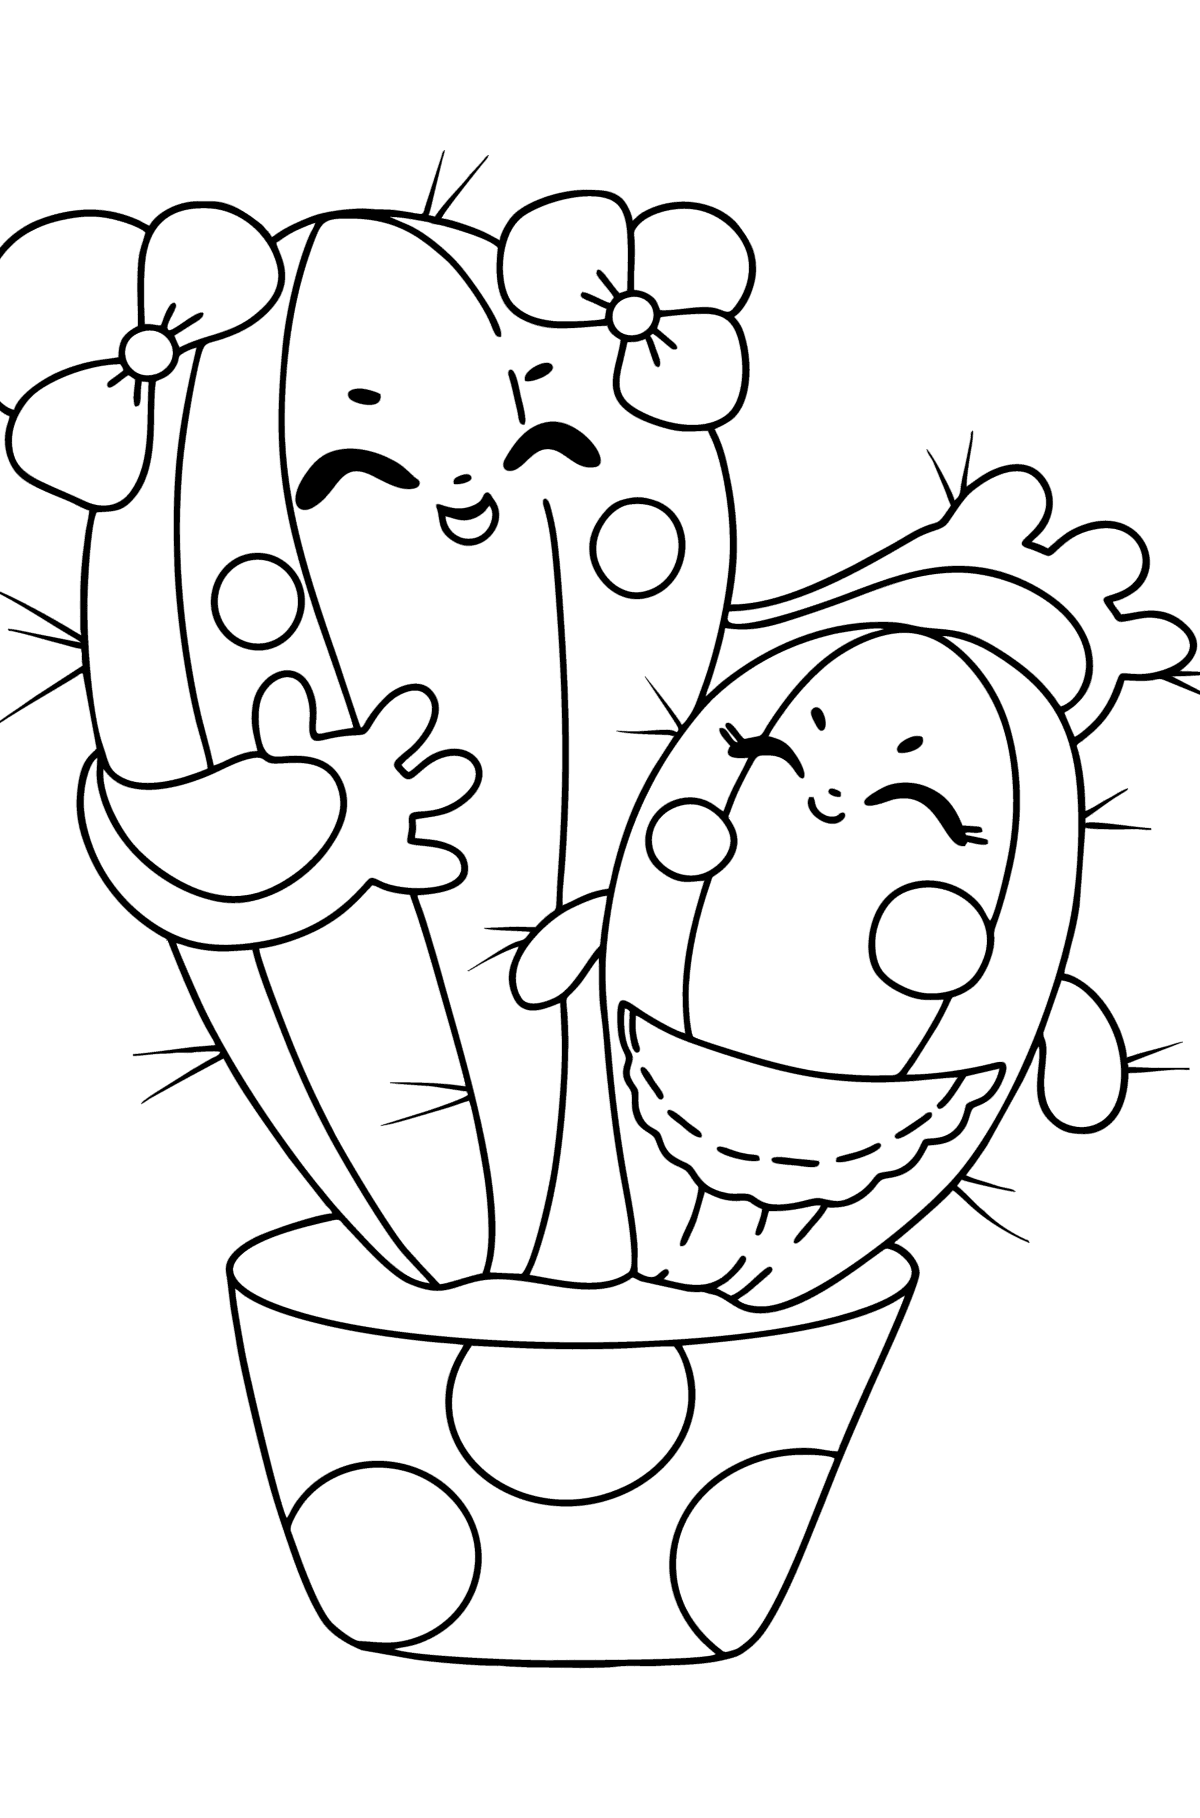 Ausmalbild Cartoon Kaktus - Malvorlagen für Kinder